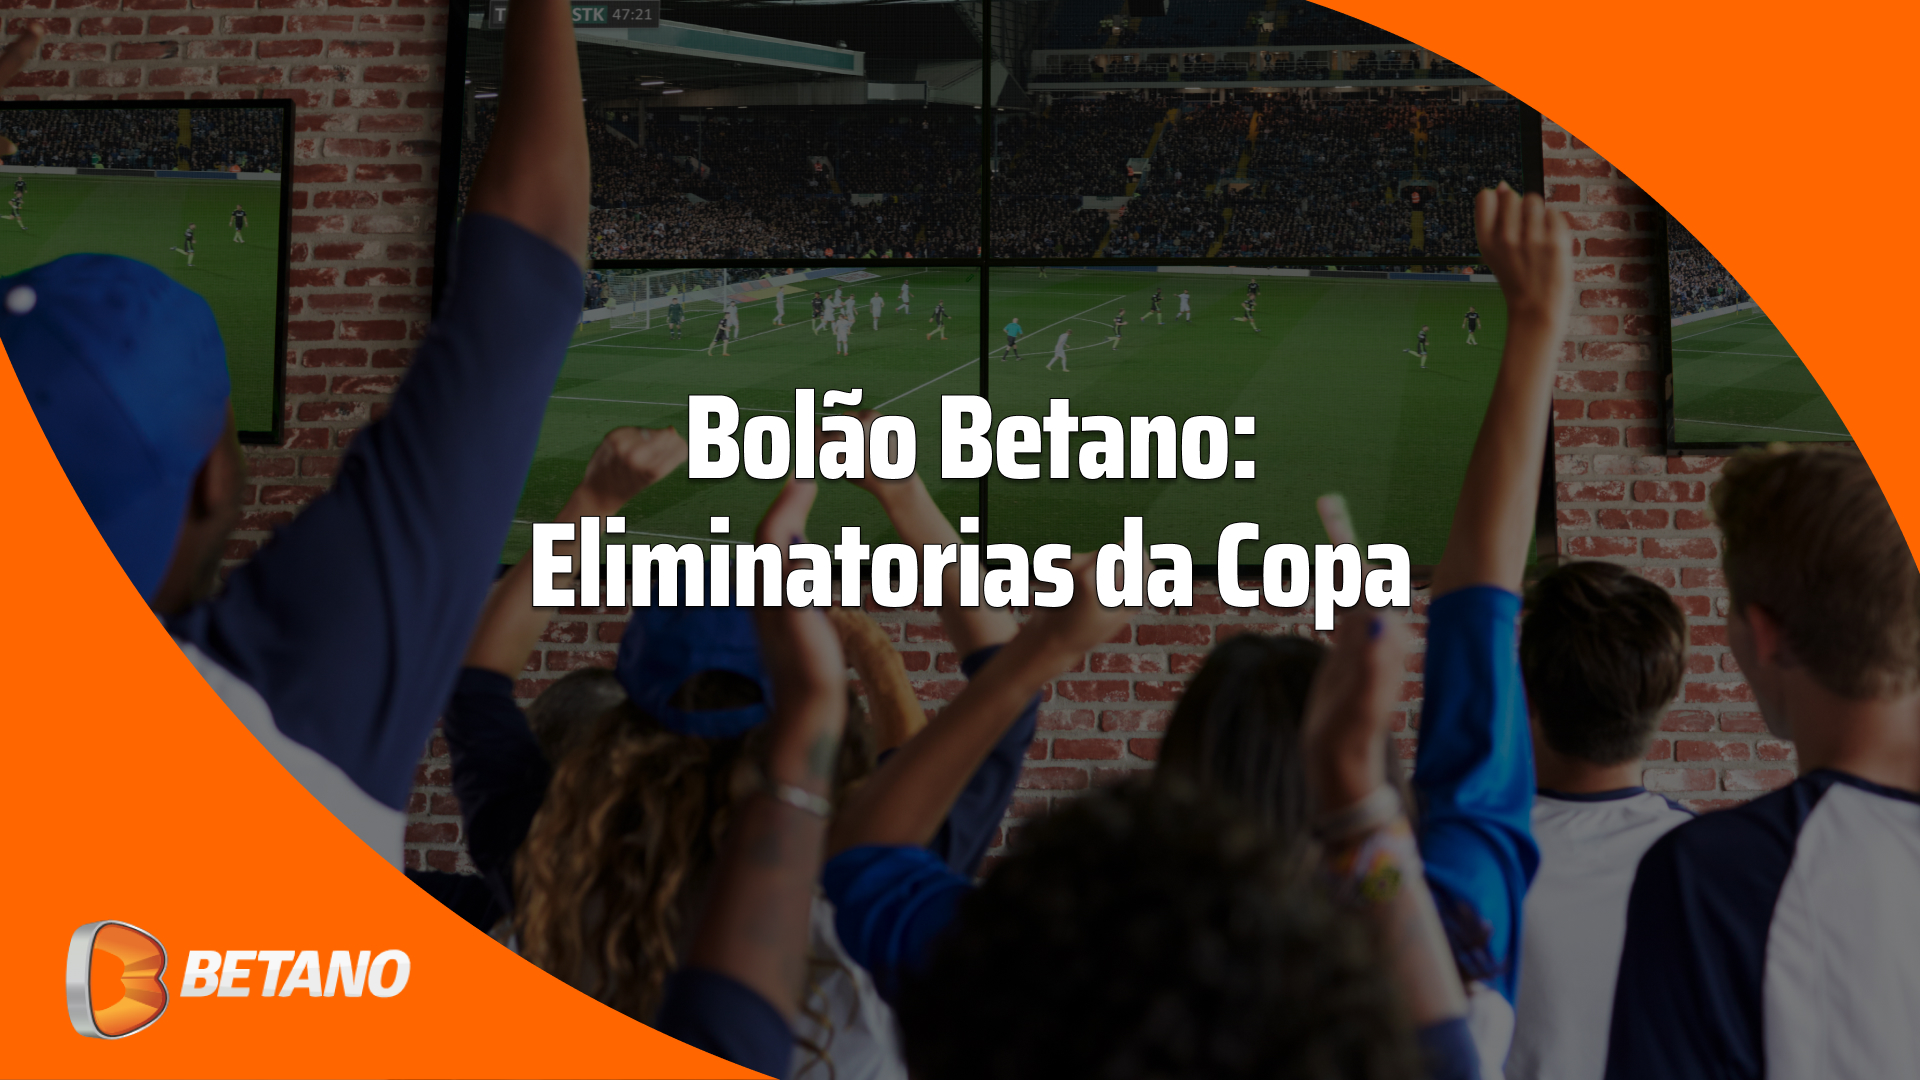 Bolão Betano para as Eliminatórias da Copa: como participar